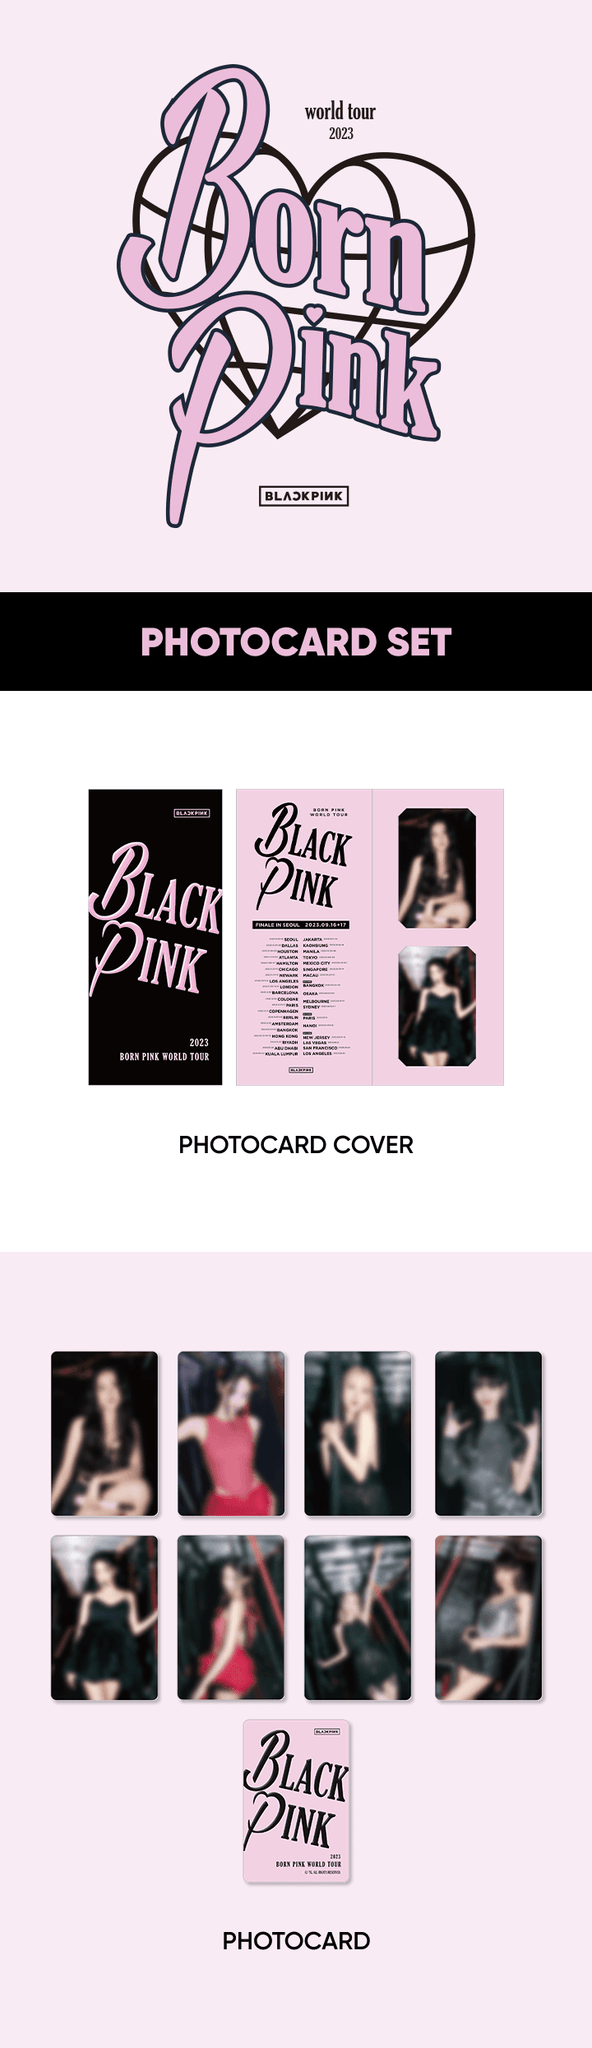 [BACKSTAGE] BLACKPINK PHOTO CARD SET